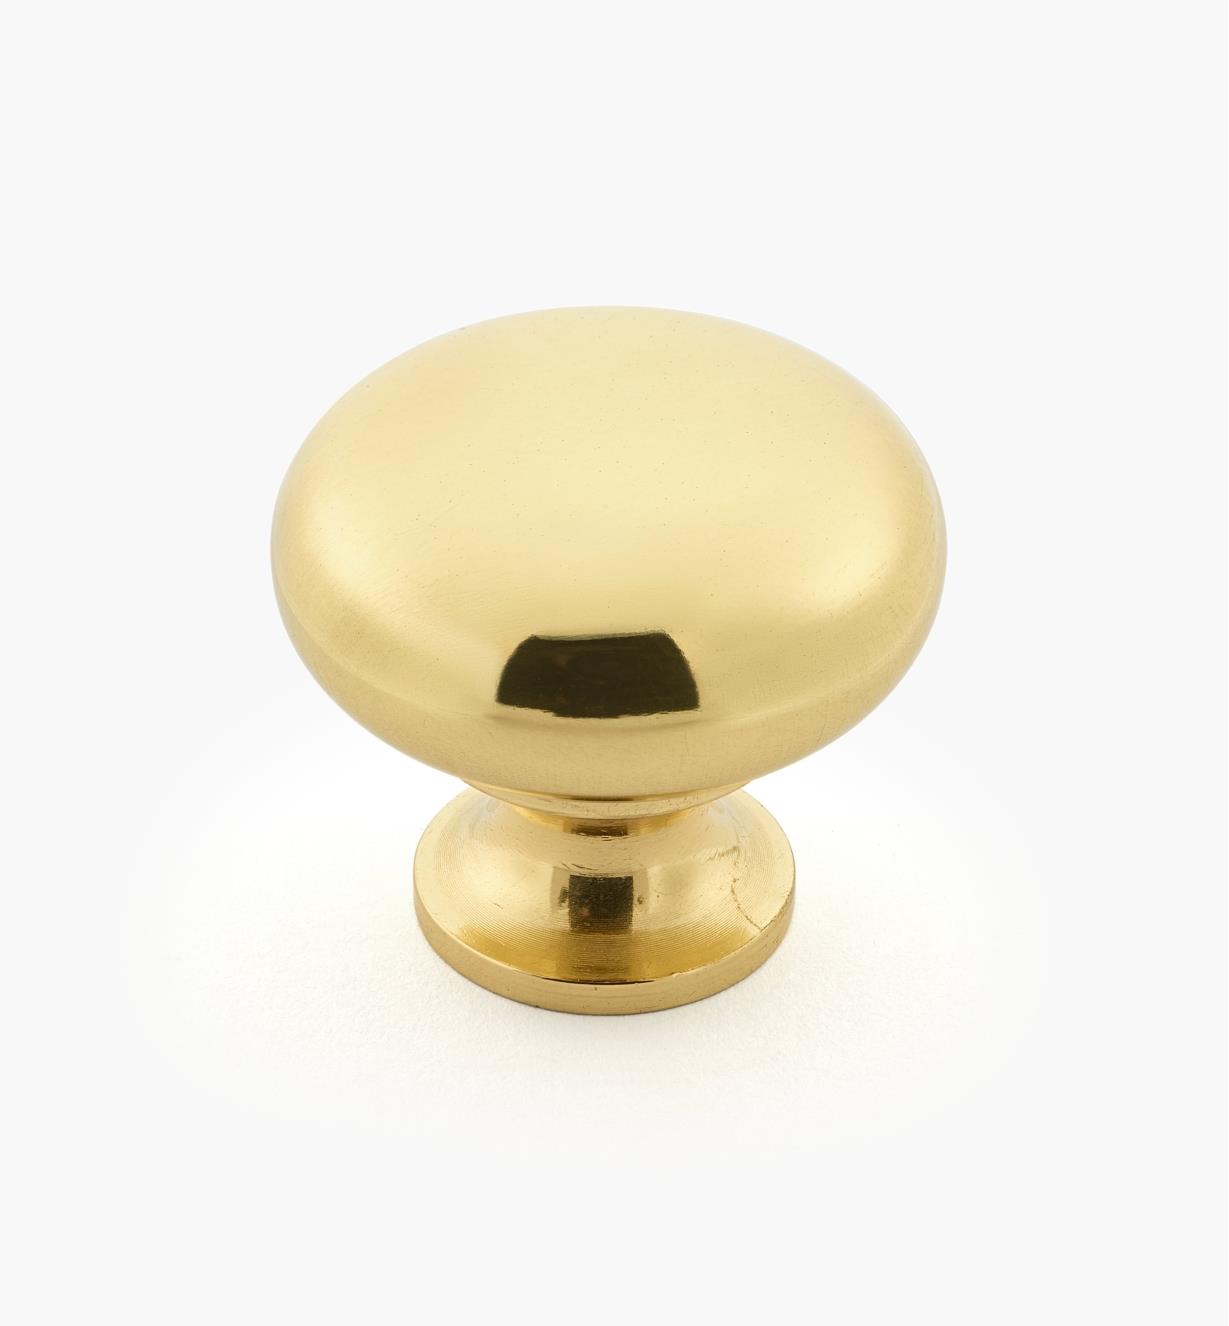 01W1501 - Square Polished Brass Knob